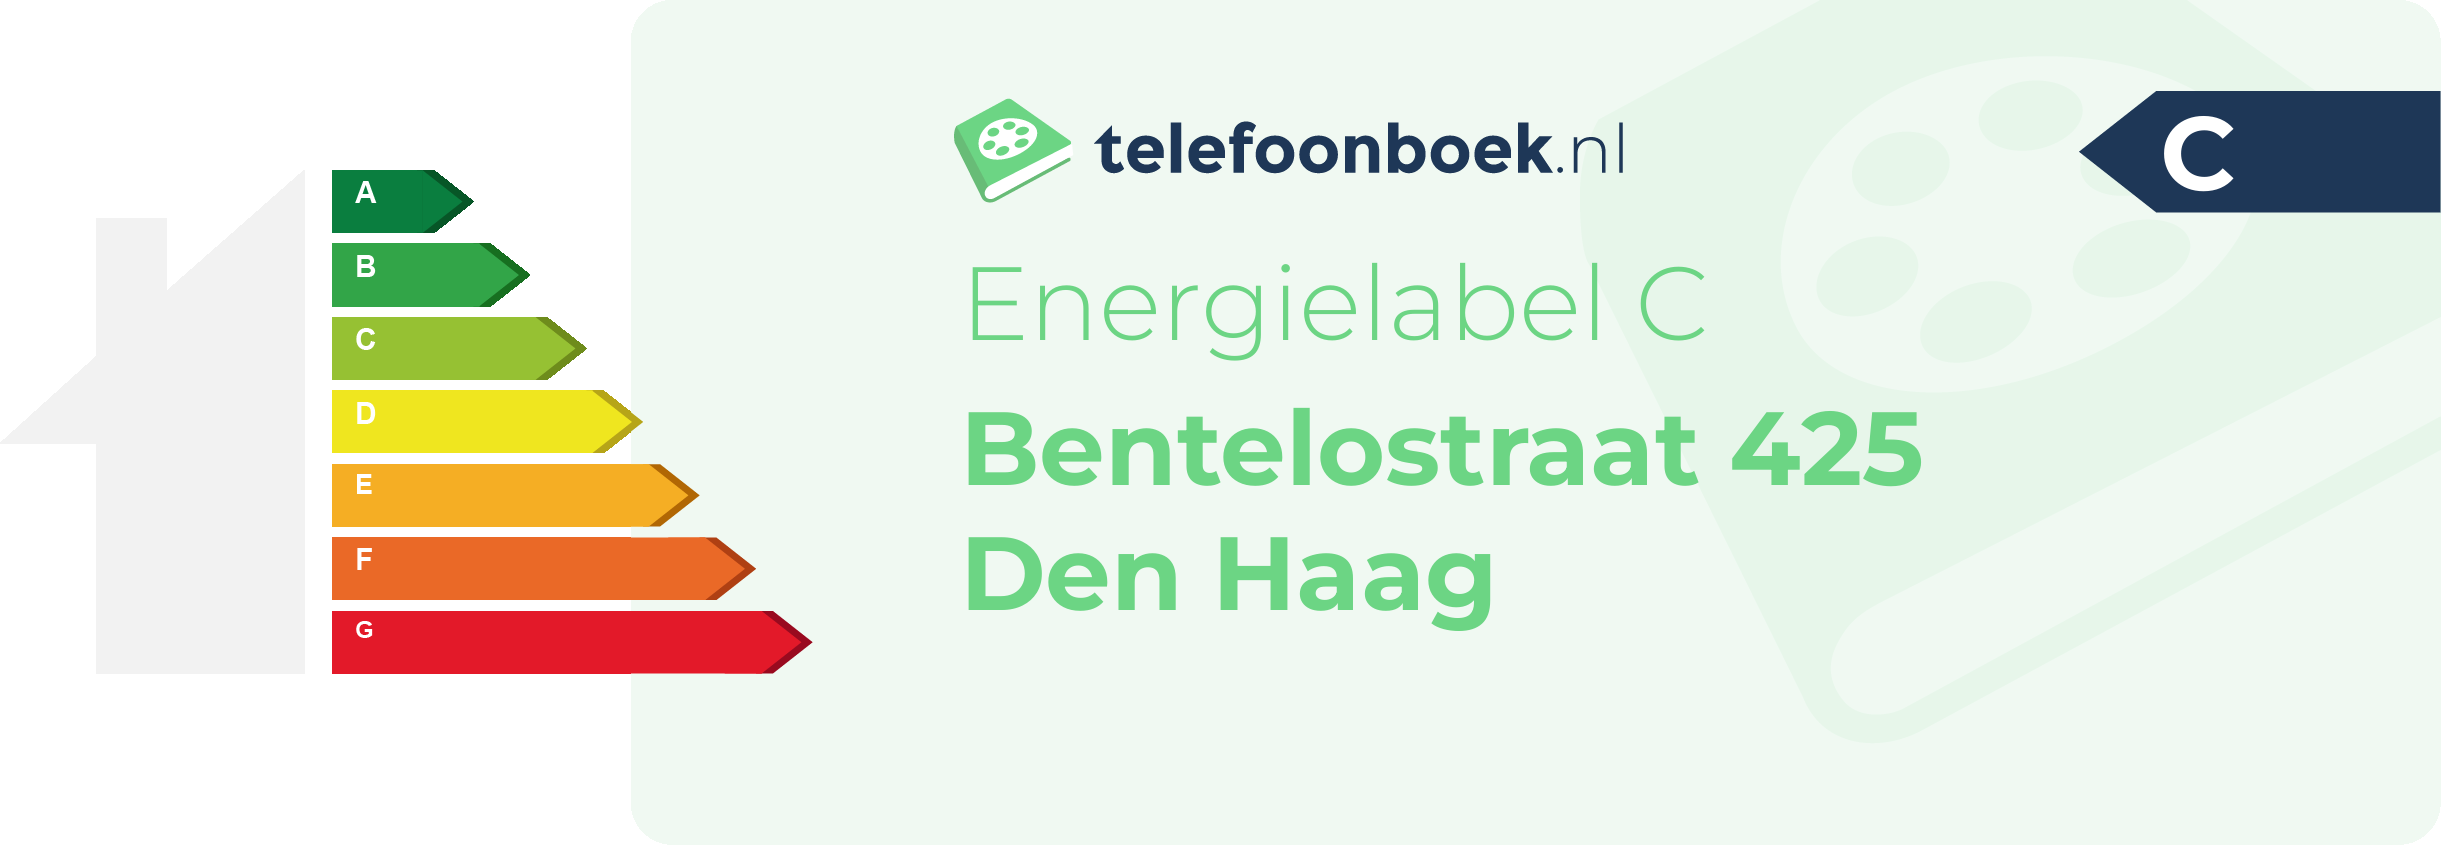 Energielabel Bentelostraat 425 Den Haag